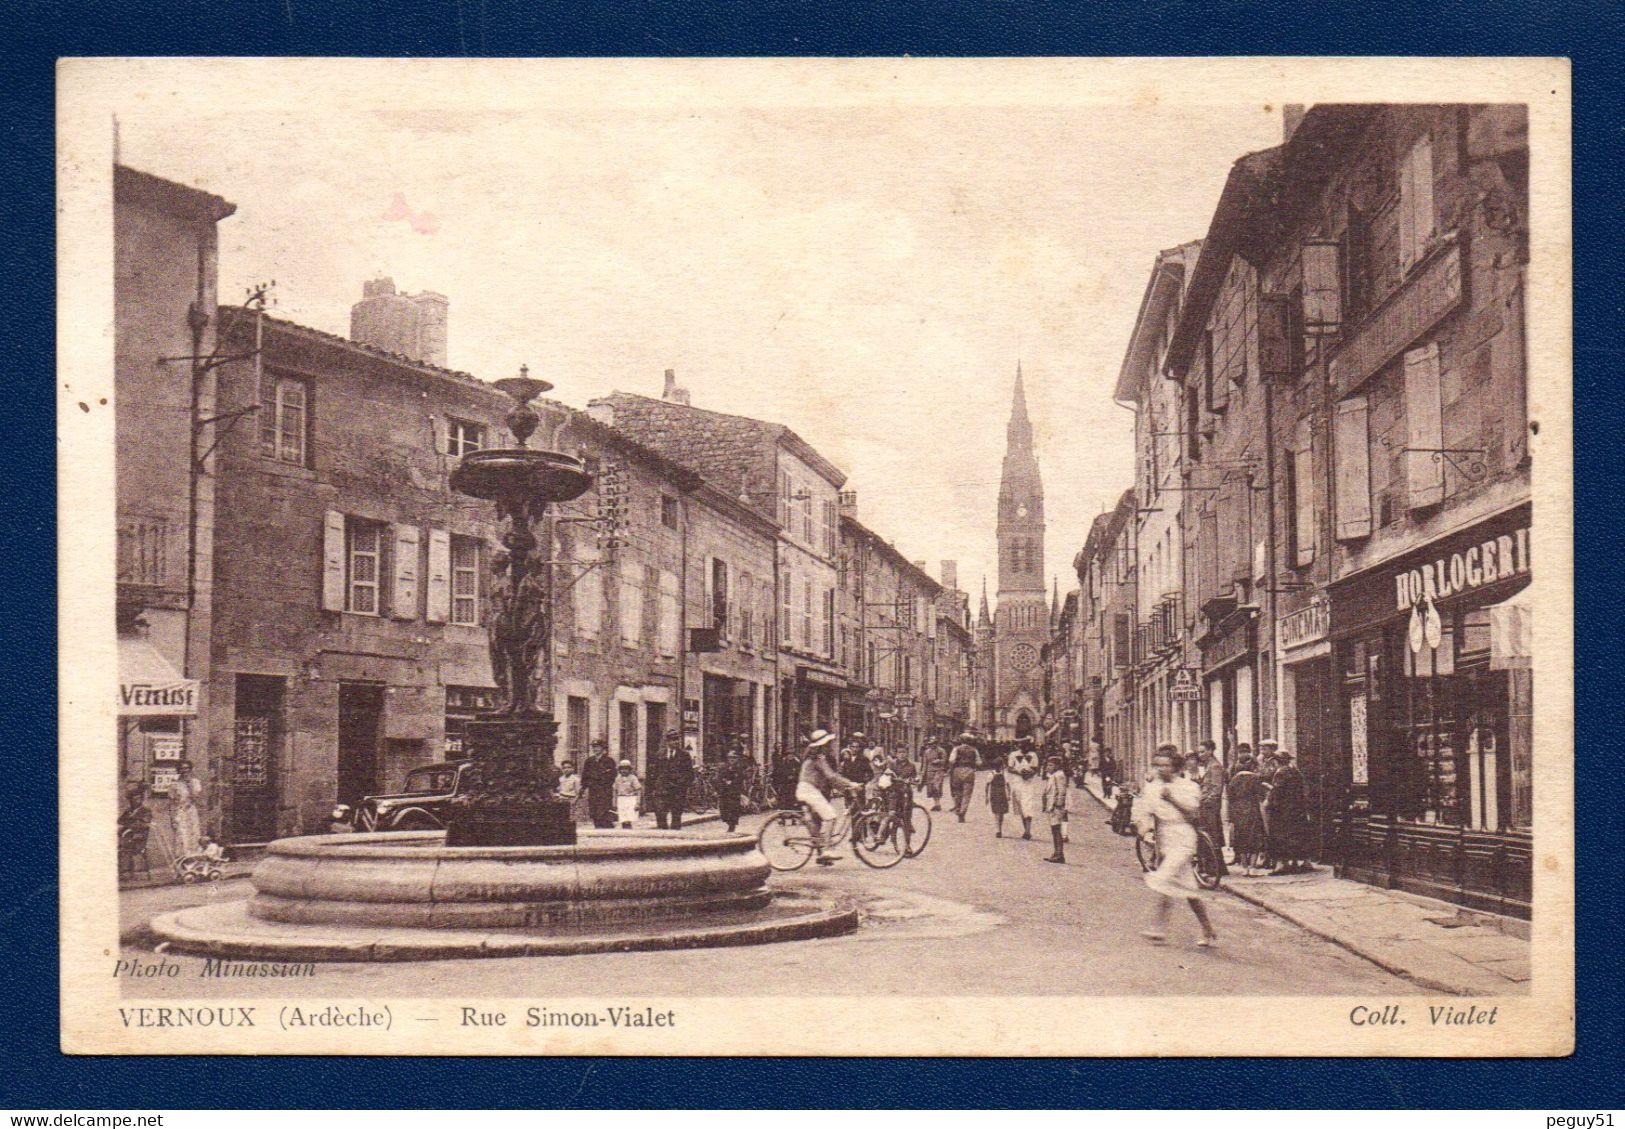 07. Vernoux. Rue Simon-Vialet. Café, Bière Vézelise. Fontaine. Grand' Rue, église St.Pierre. Horlogerie. Cinéma.  1940 - Vernoux